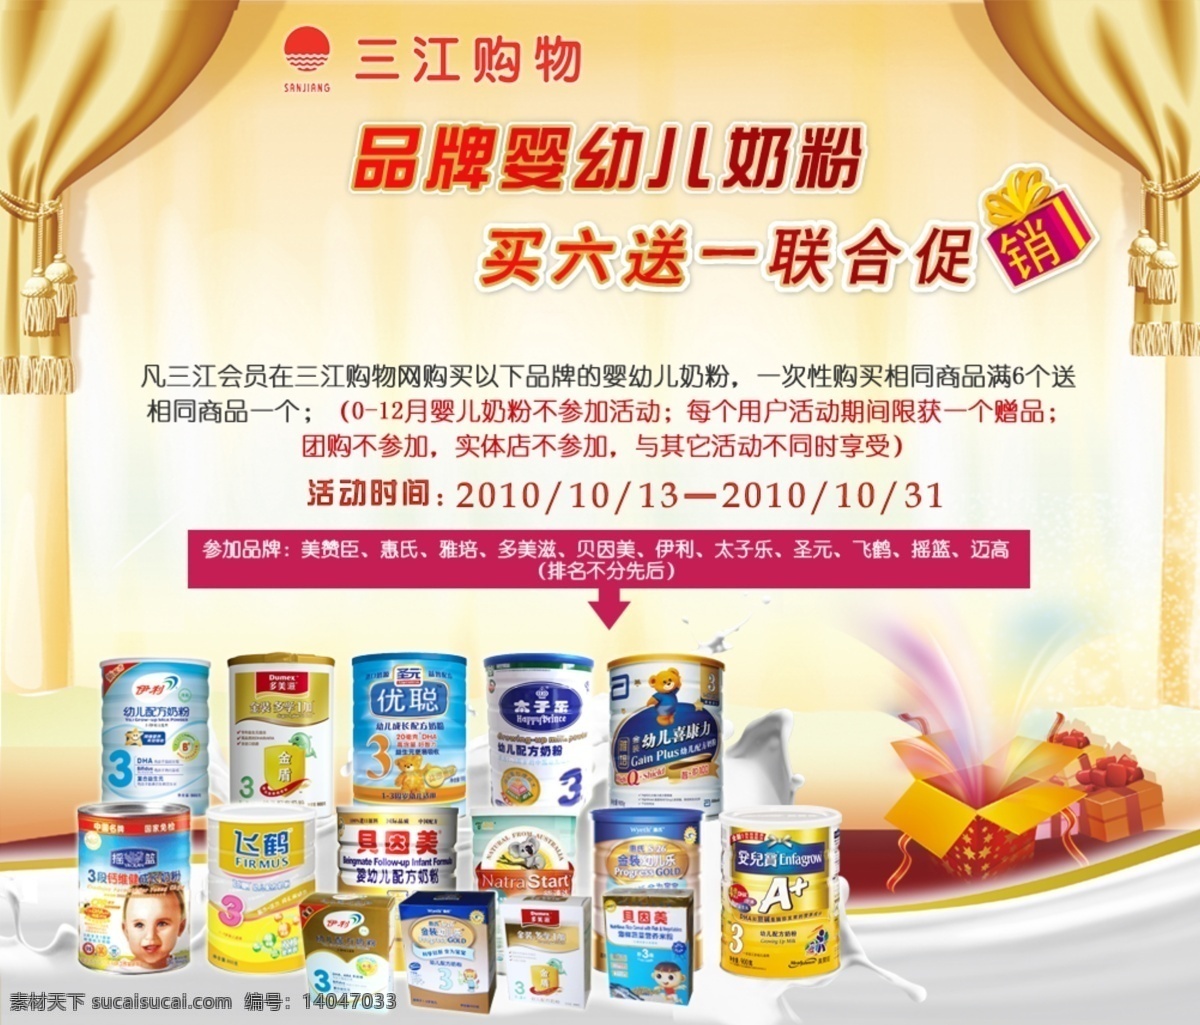 品牌 奶粉 网页 促销活动 促销 网页模板 源文件 中文模版 买六送一 网页素材